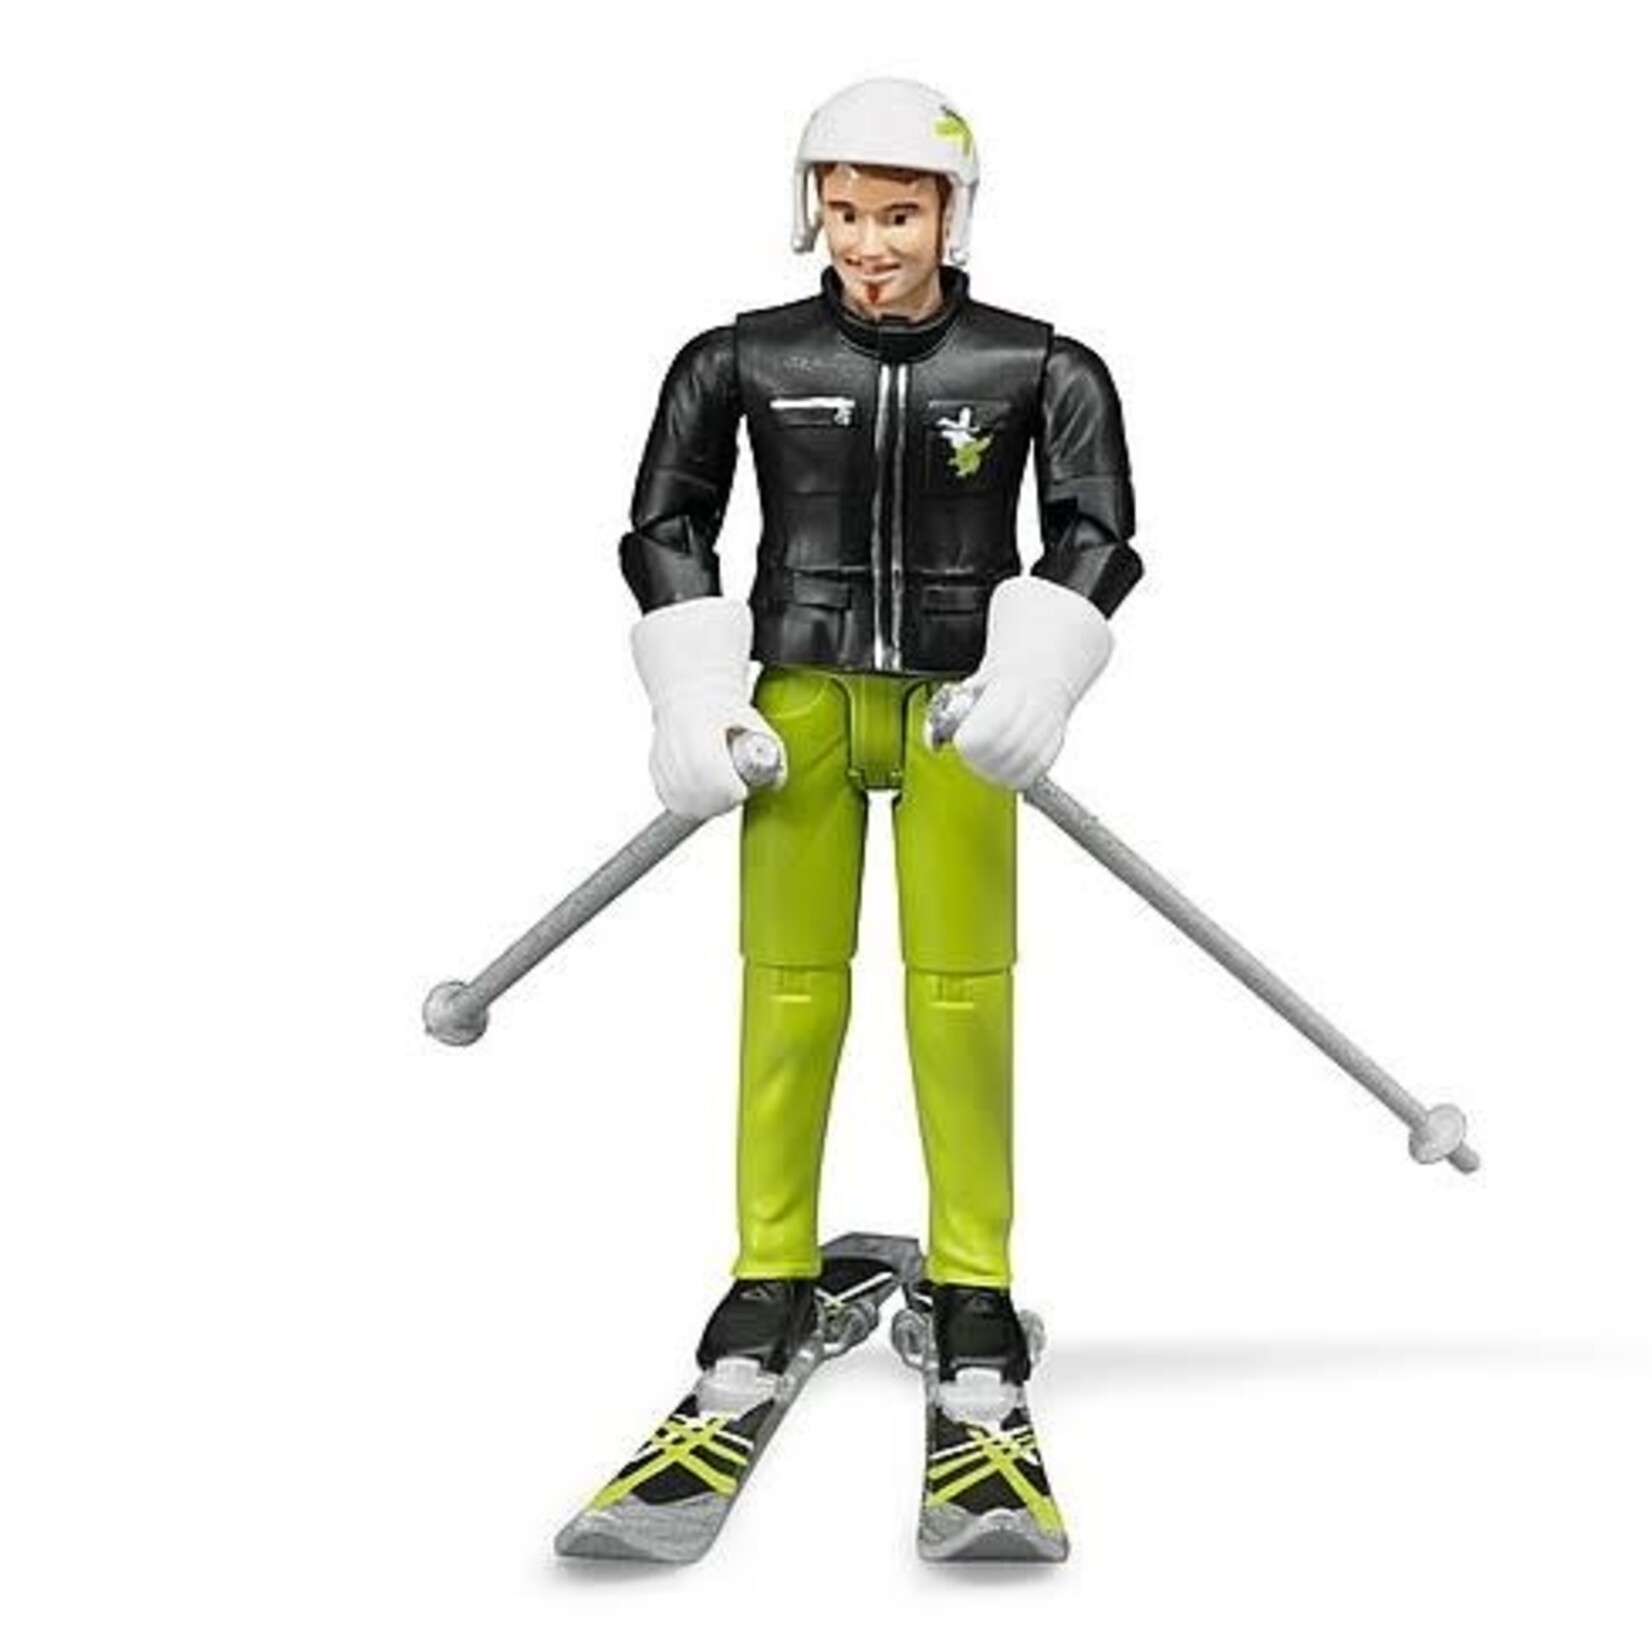 Bruder Skier with Accessories